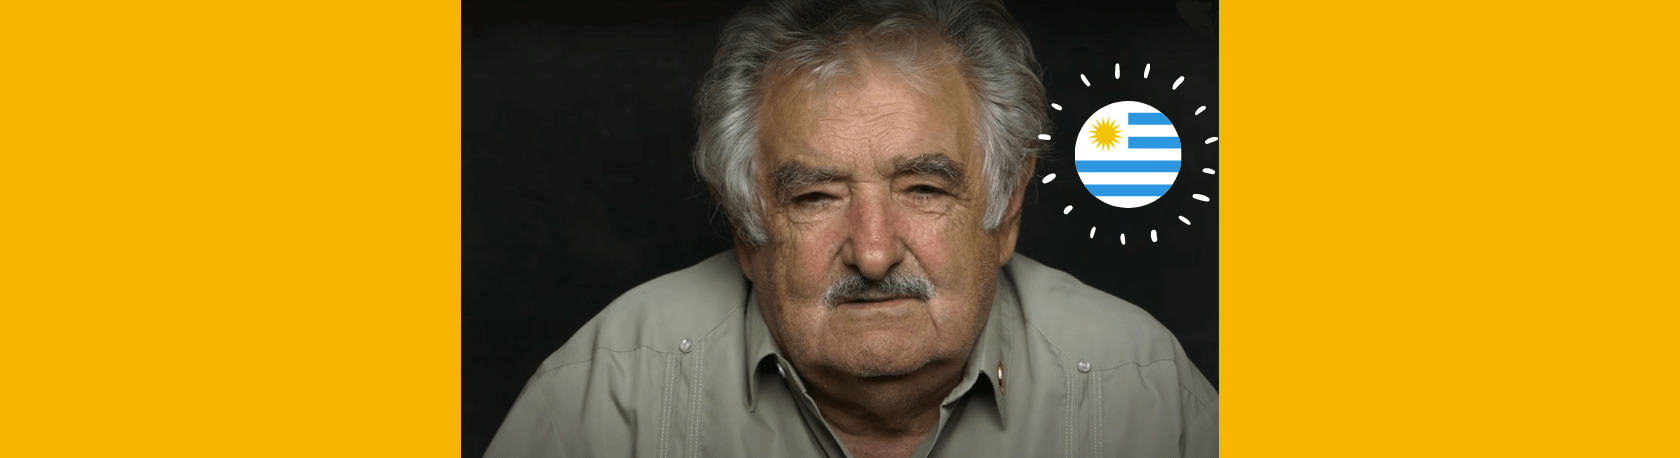 Easy Podcast - Pepe Mujica, el apóstol de la política - Easy Español